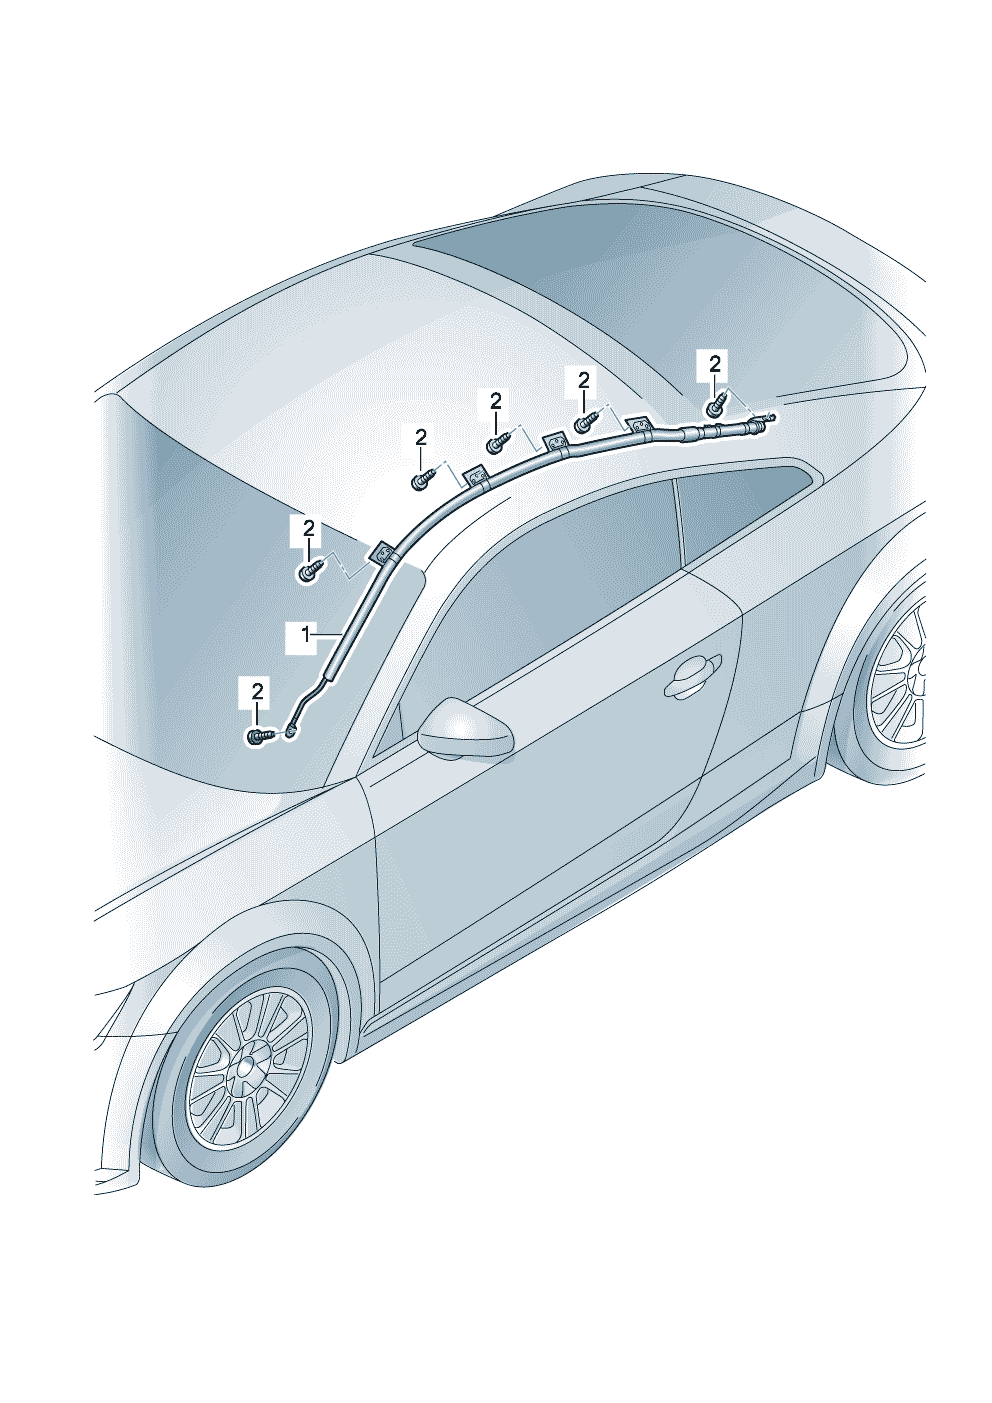 unidad airbag cabeza<br/><br/><br/><br/><br/> Cuidado merc.pelig<br/><br/><br/><br/><br/><br/>vease manual de reparaciones  - Audi TT/TTS Coupe/Roadster - att